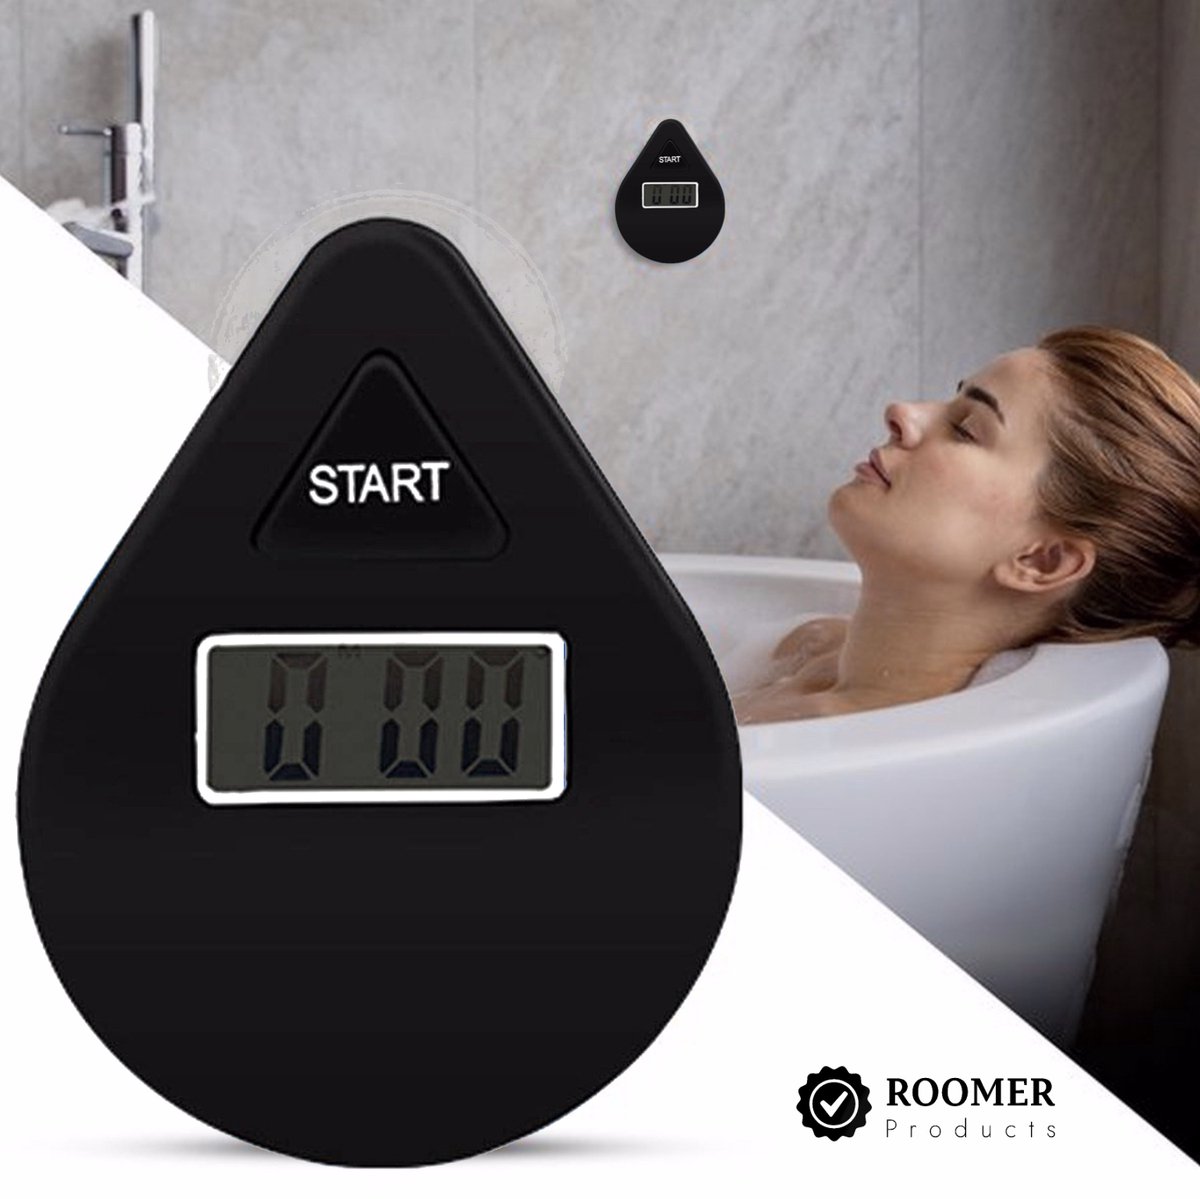 Douche Timer Zwart - 5 Minuten - Douche Wekker - Shower Timer - Douche Klok - Water besparend - Milieubewust